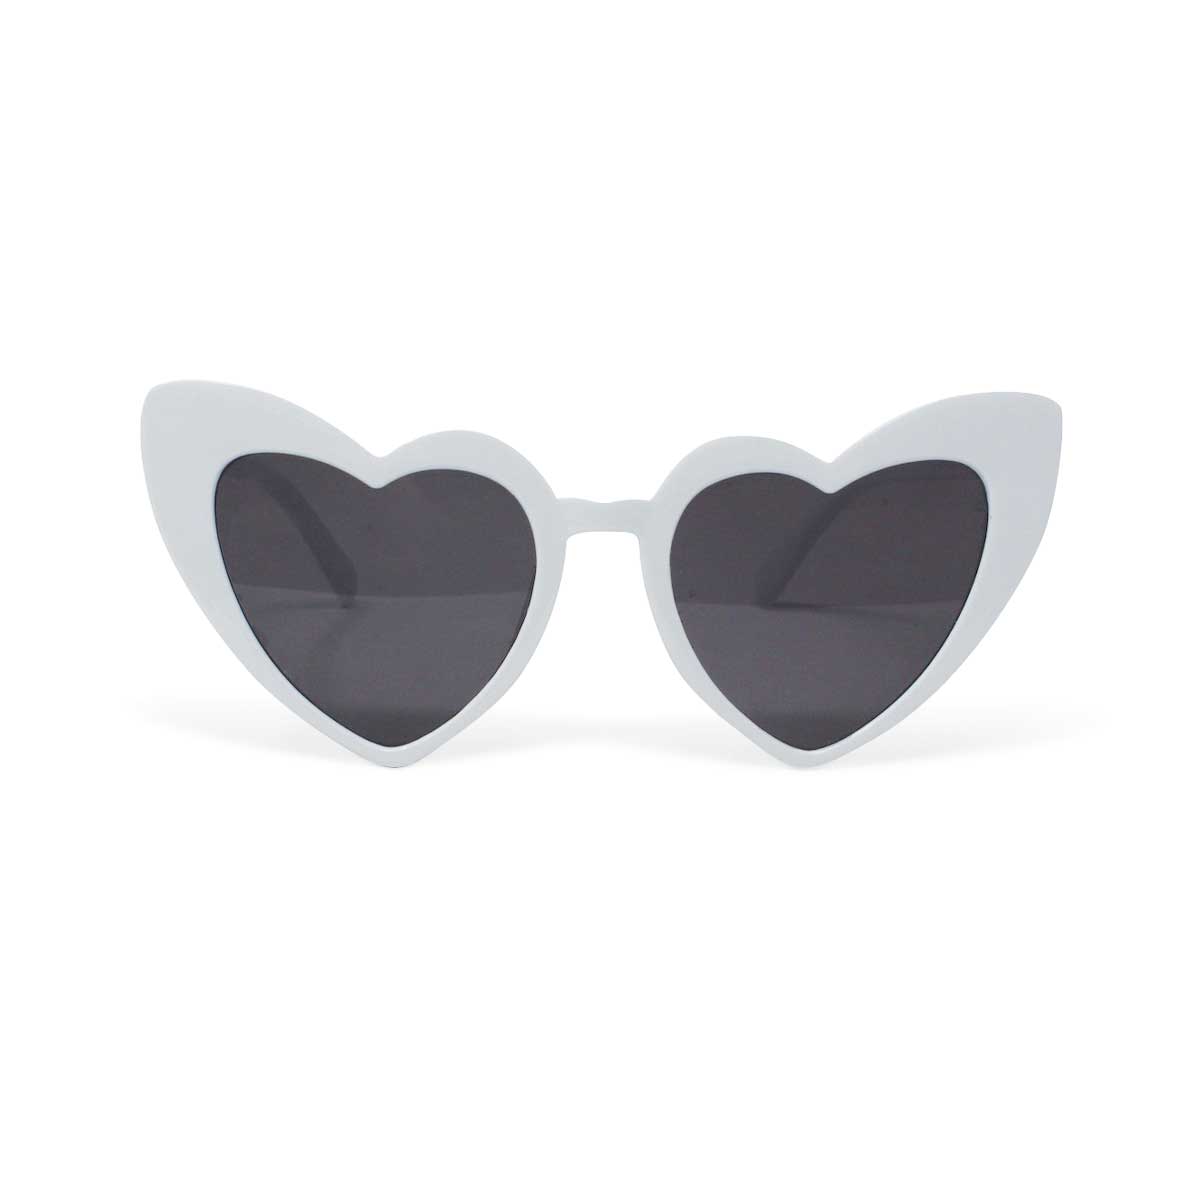 Retro Heart Shaped Sunglasses - White